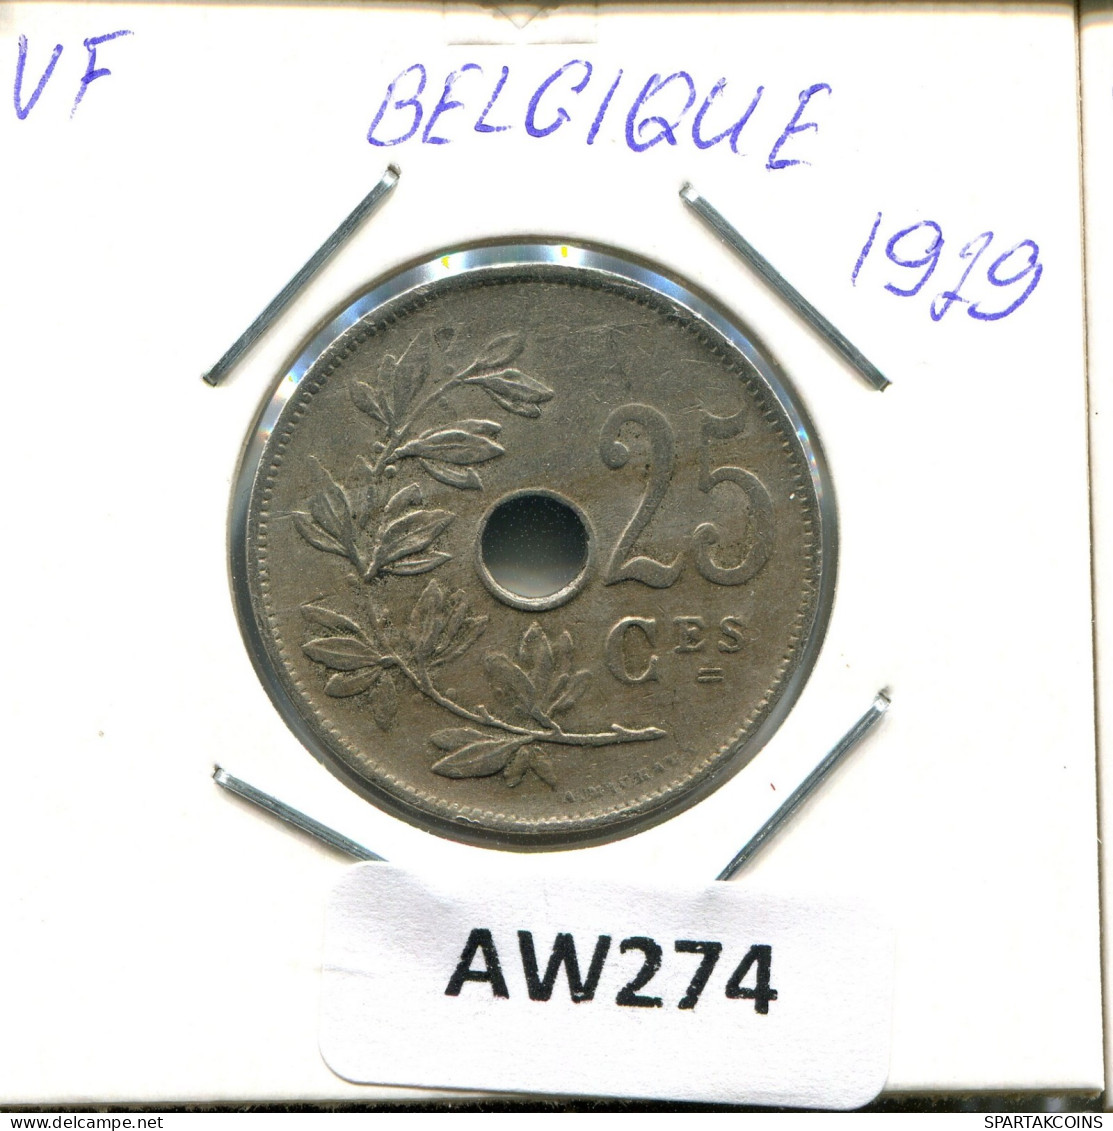 25 CENTIMES 1929 FRENCH Text BÉLGICA BELGIUM Moneda #AW274.E.A - 25 Cent